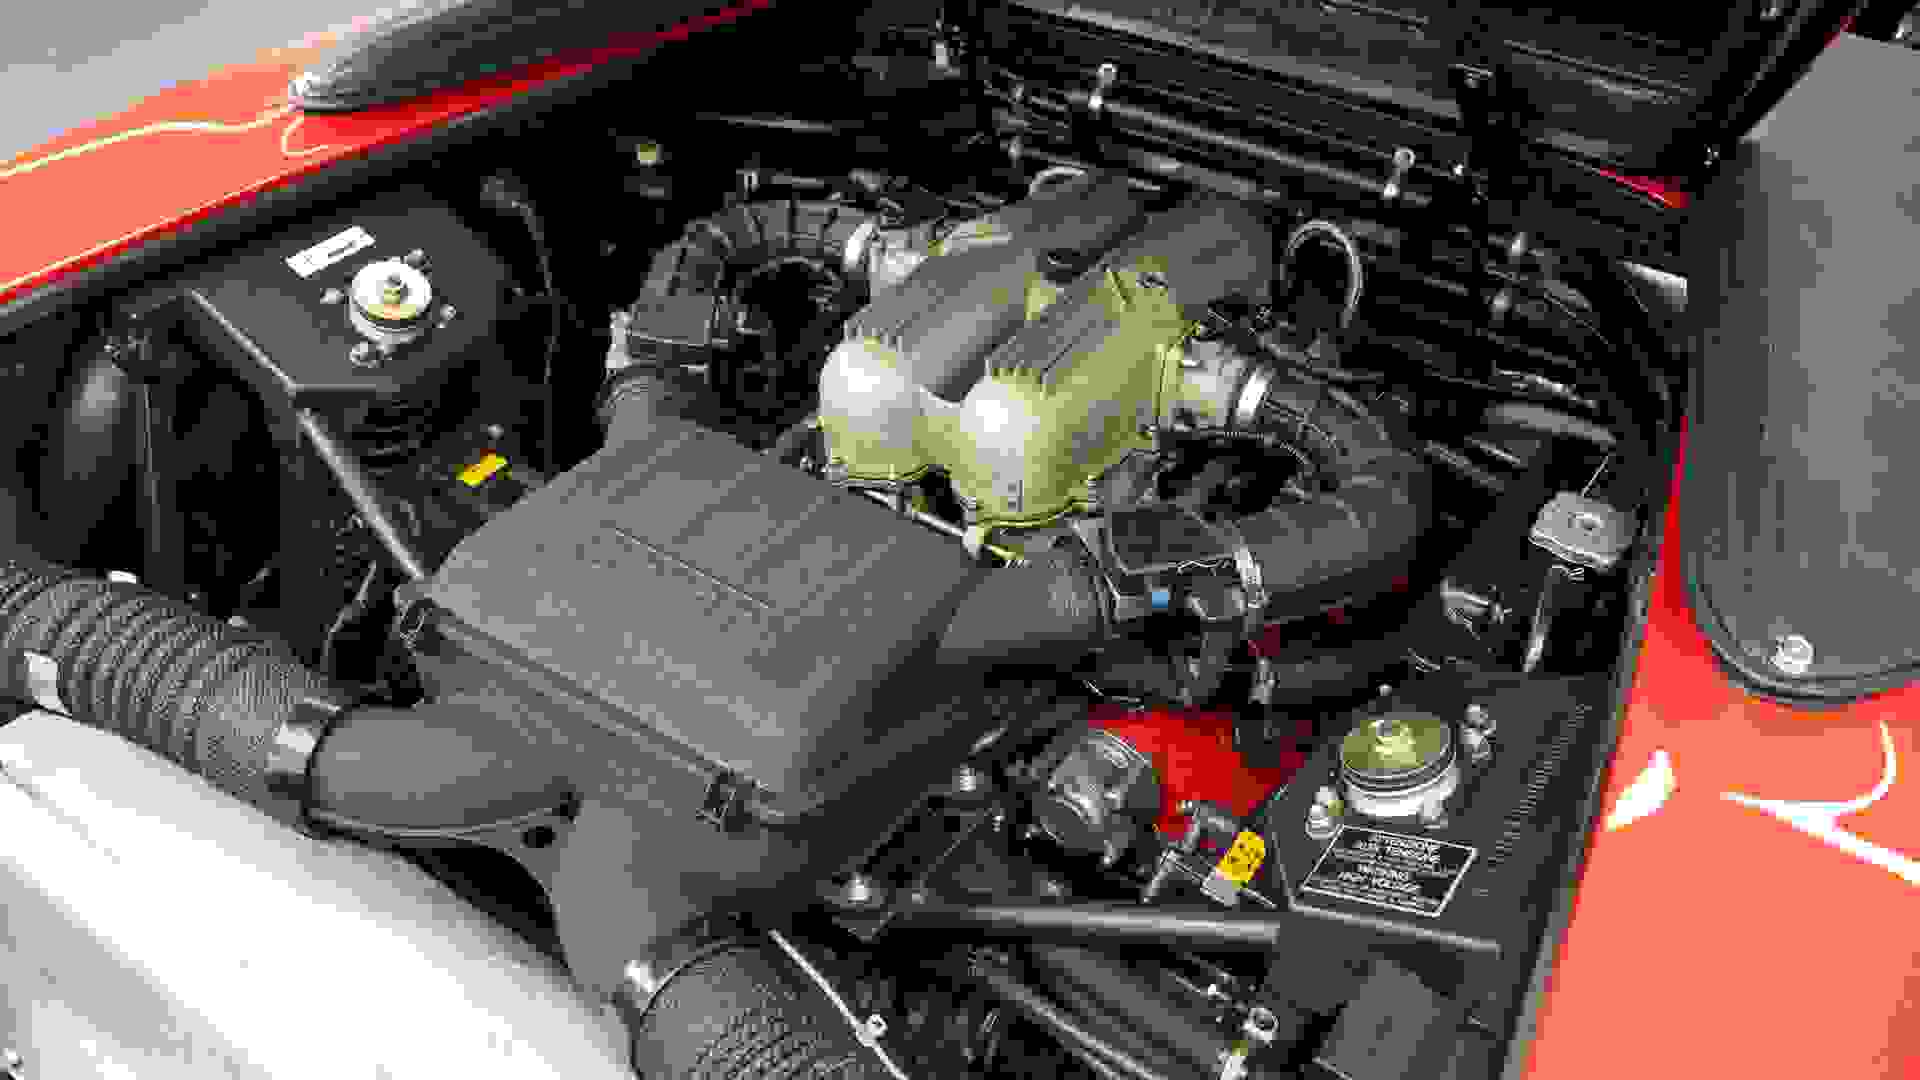 Ferrari 348 Photo d387a351-c13f-42c3-9273-b1f6414ad64b.jpg